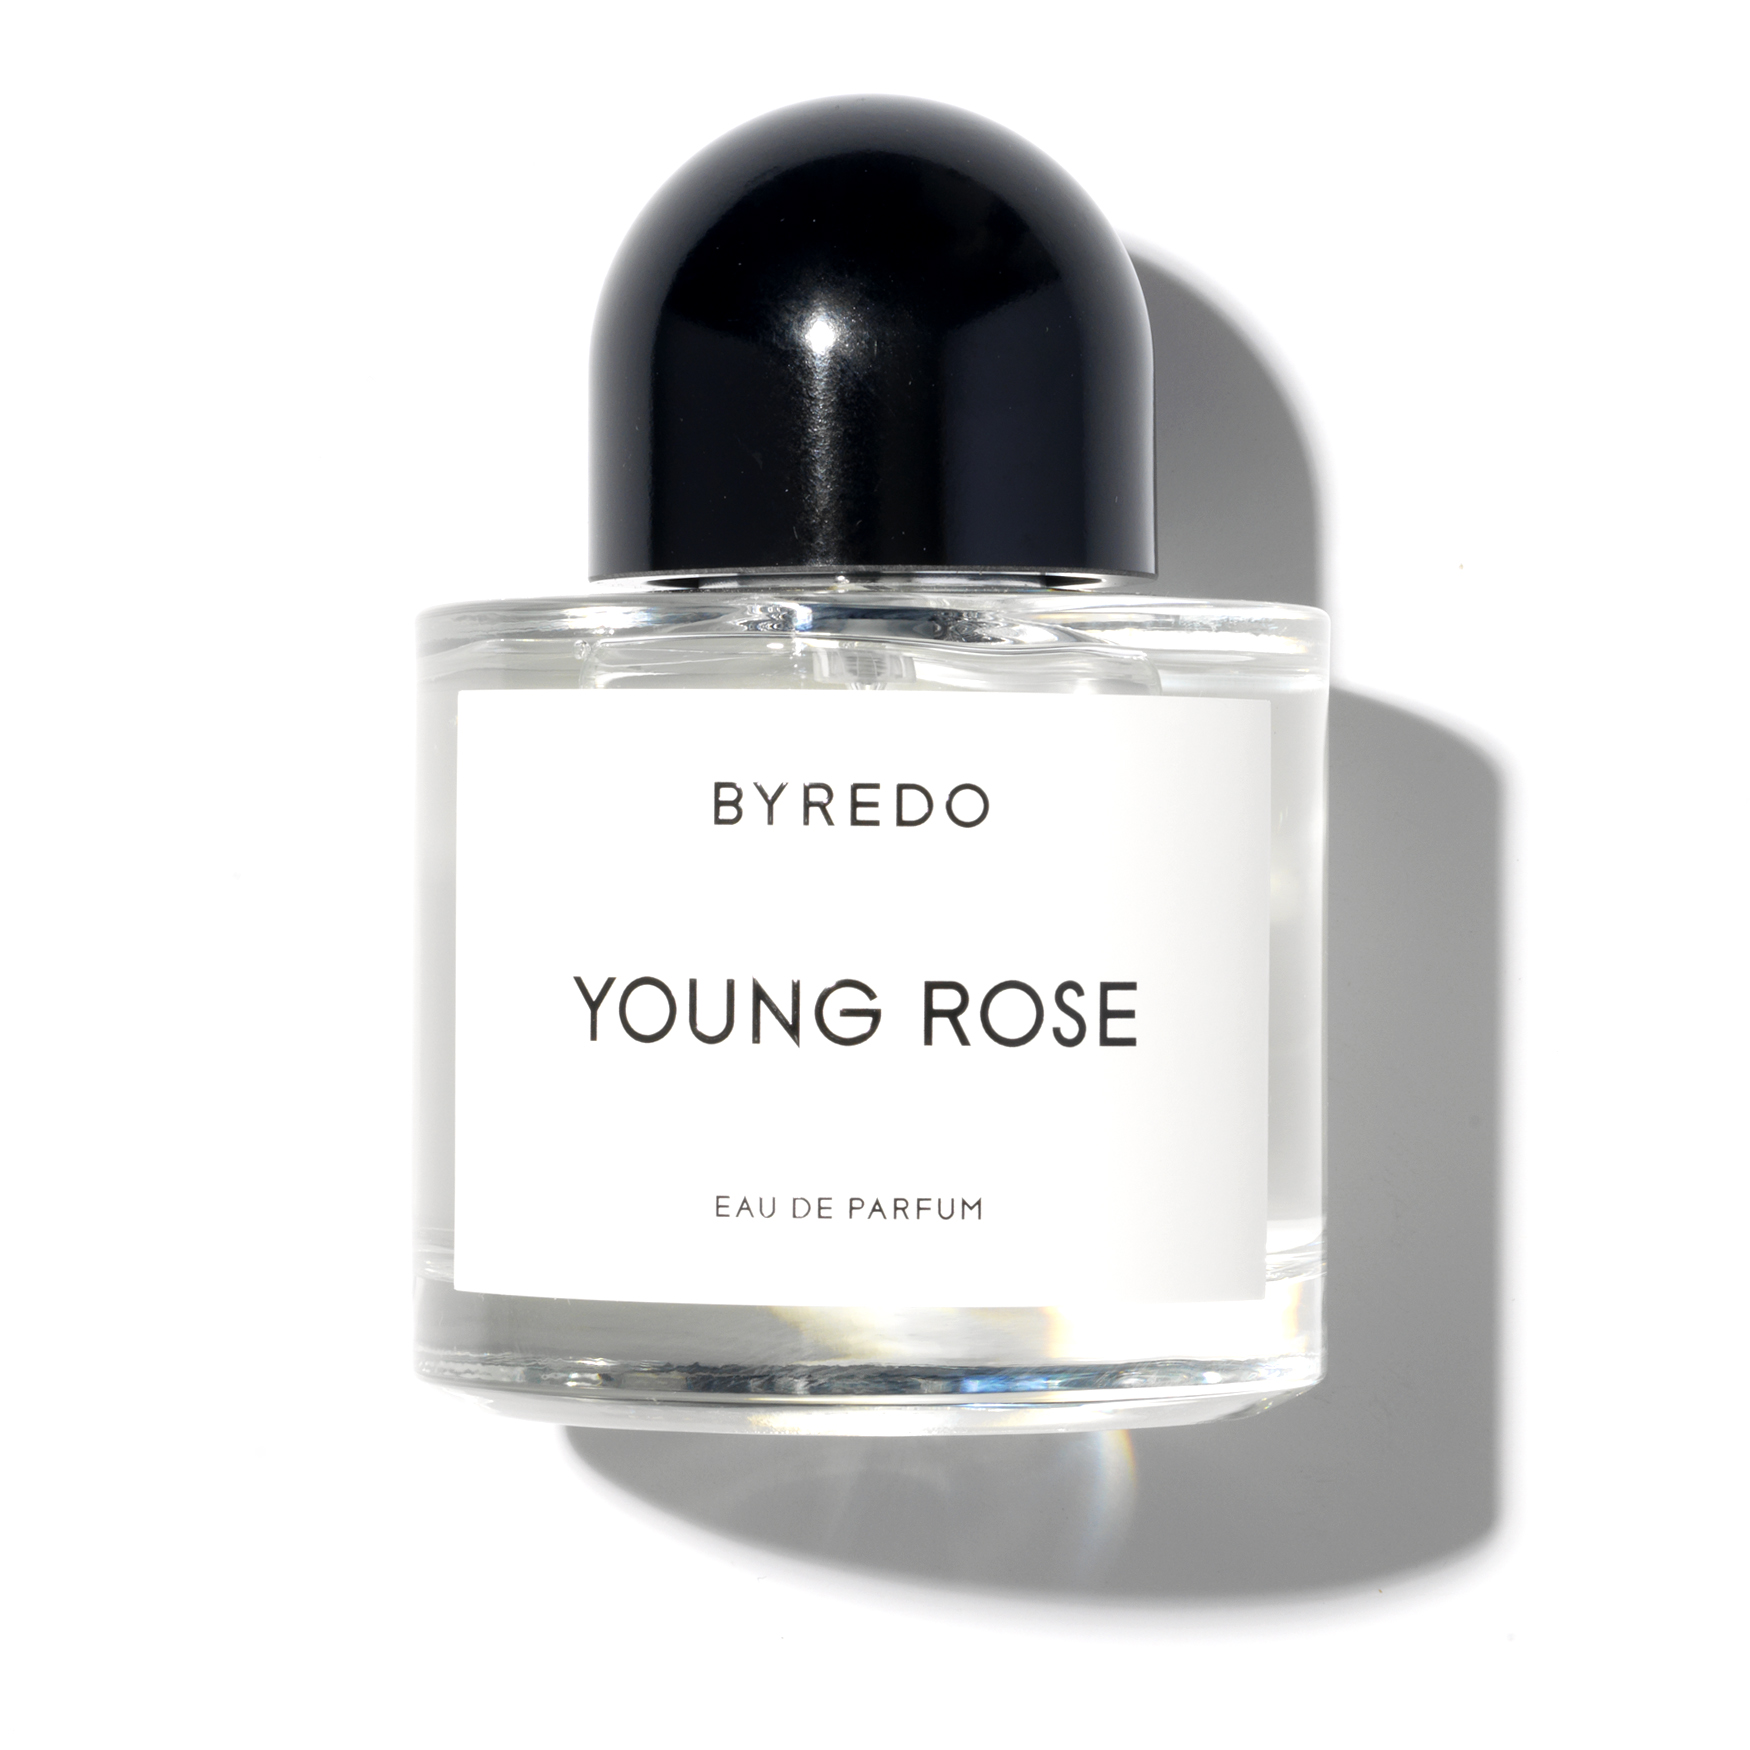 Байредо флер. Byredo young Rose 100 ml. Byredo young Rose 50ml. Духи Byredo Deep Viola. Оригинал Byredo young Rose духи женские.